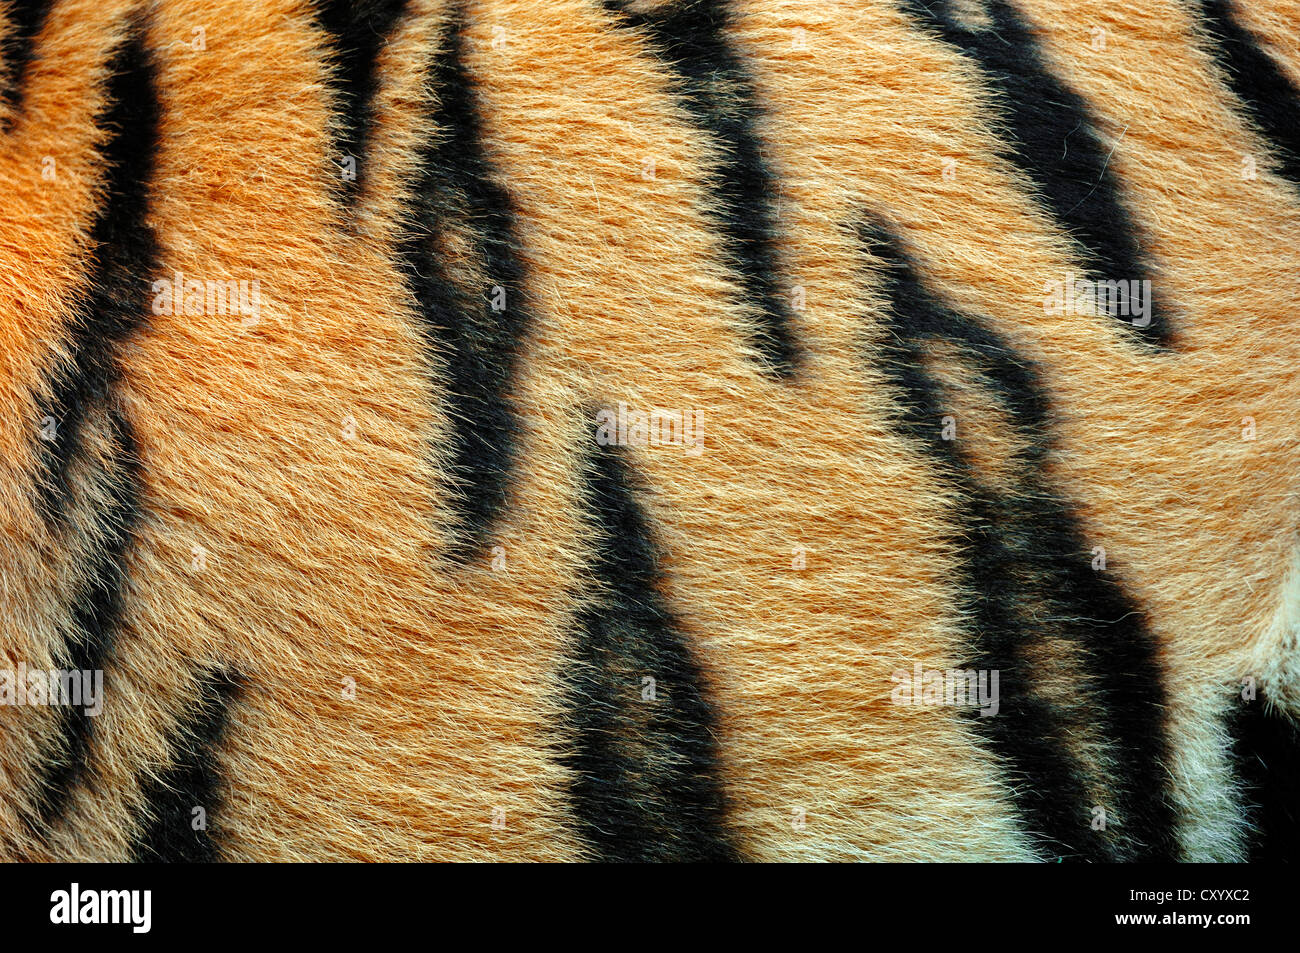 Siberian tiger or Amur tiger (Panthera tigris altaica), detail of coat, Asian species, captive Stock Photo